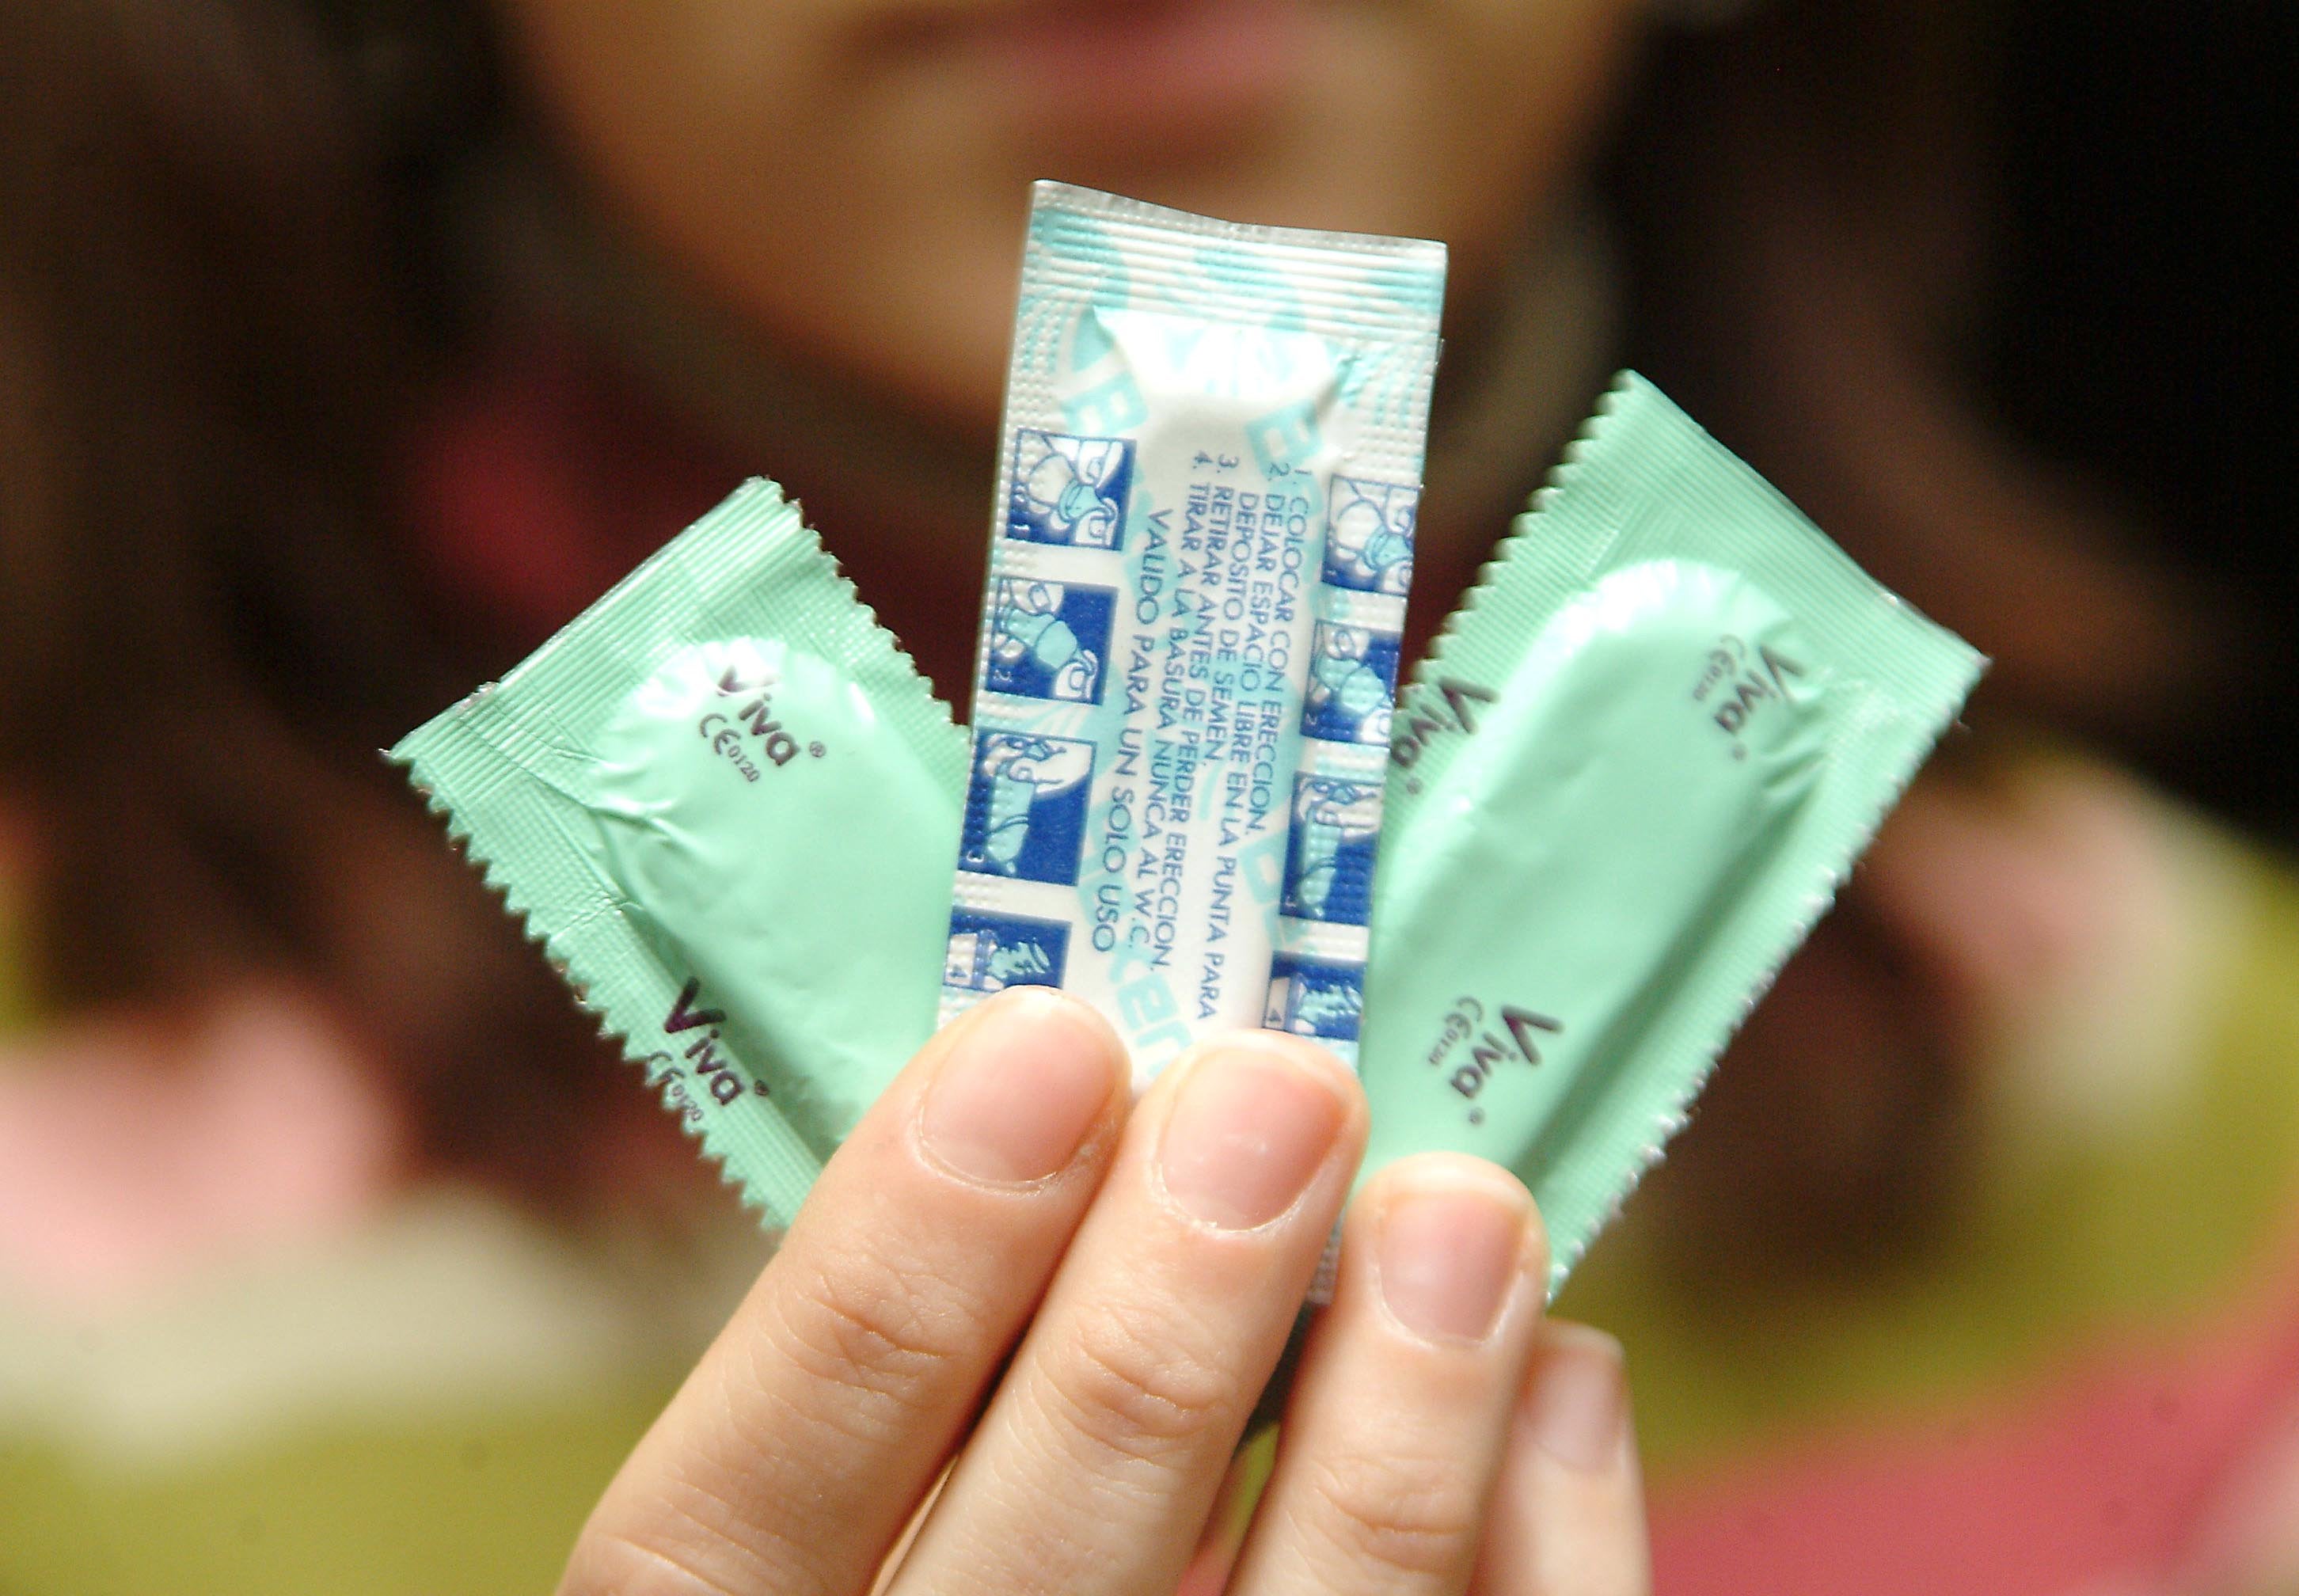 Sanidad destinará 10 millones de euros a financiar preservativos para jóvenes este año